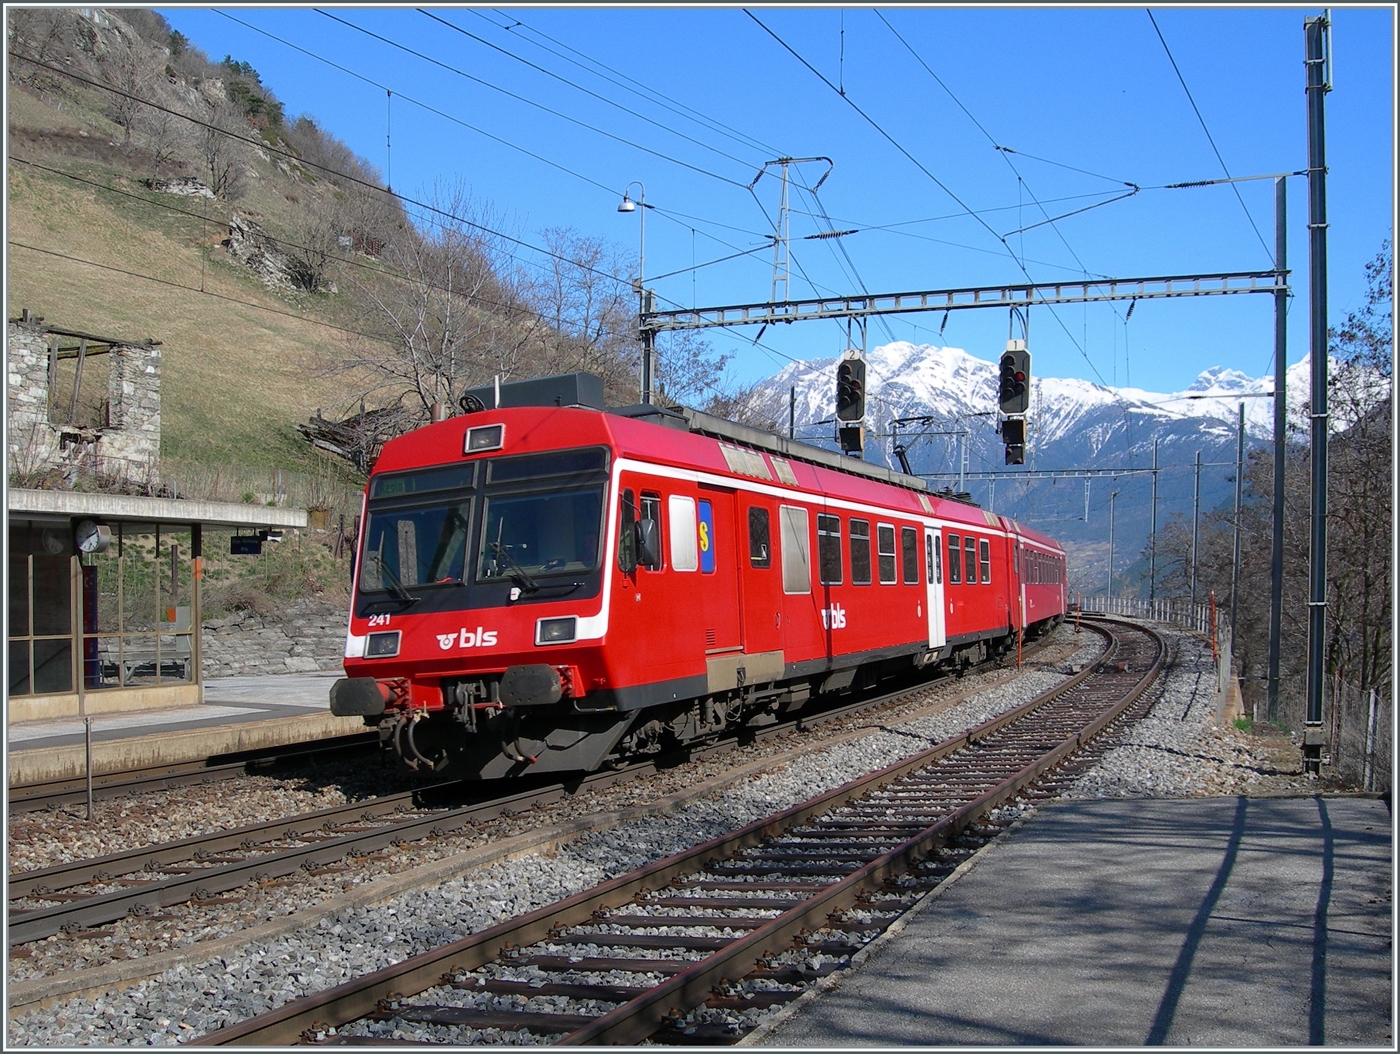 Die von bei der Fusion von der RM übernommen RBDe 566 Pendelzüge fuhren einige Zeit im RM Rot als BLS Regionalzüge. Mit dem ABt 941 an der Spitze und dem schiebenden RBDe 566 241 verlässt der Regionalzug von Goppenstein nach Brig den Bahnhof Ausserberg.

16. März 2007